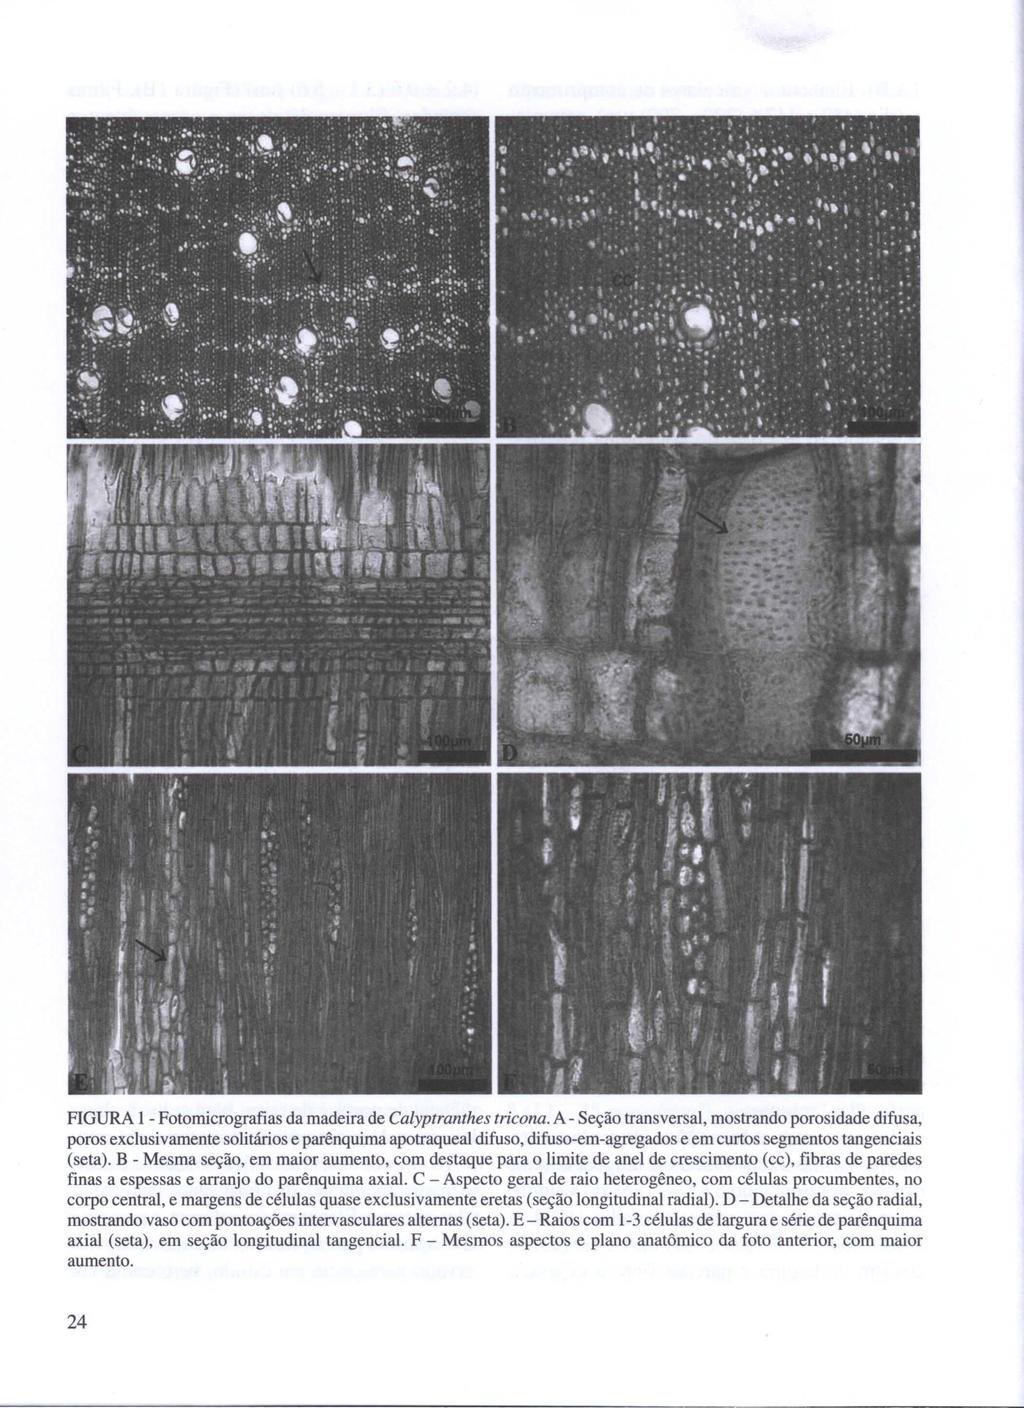 FIGURA 1 - Fotomicrografias da madeira de Calyptranthes tricona.